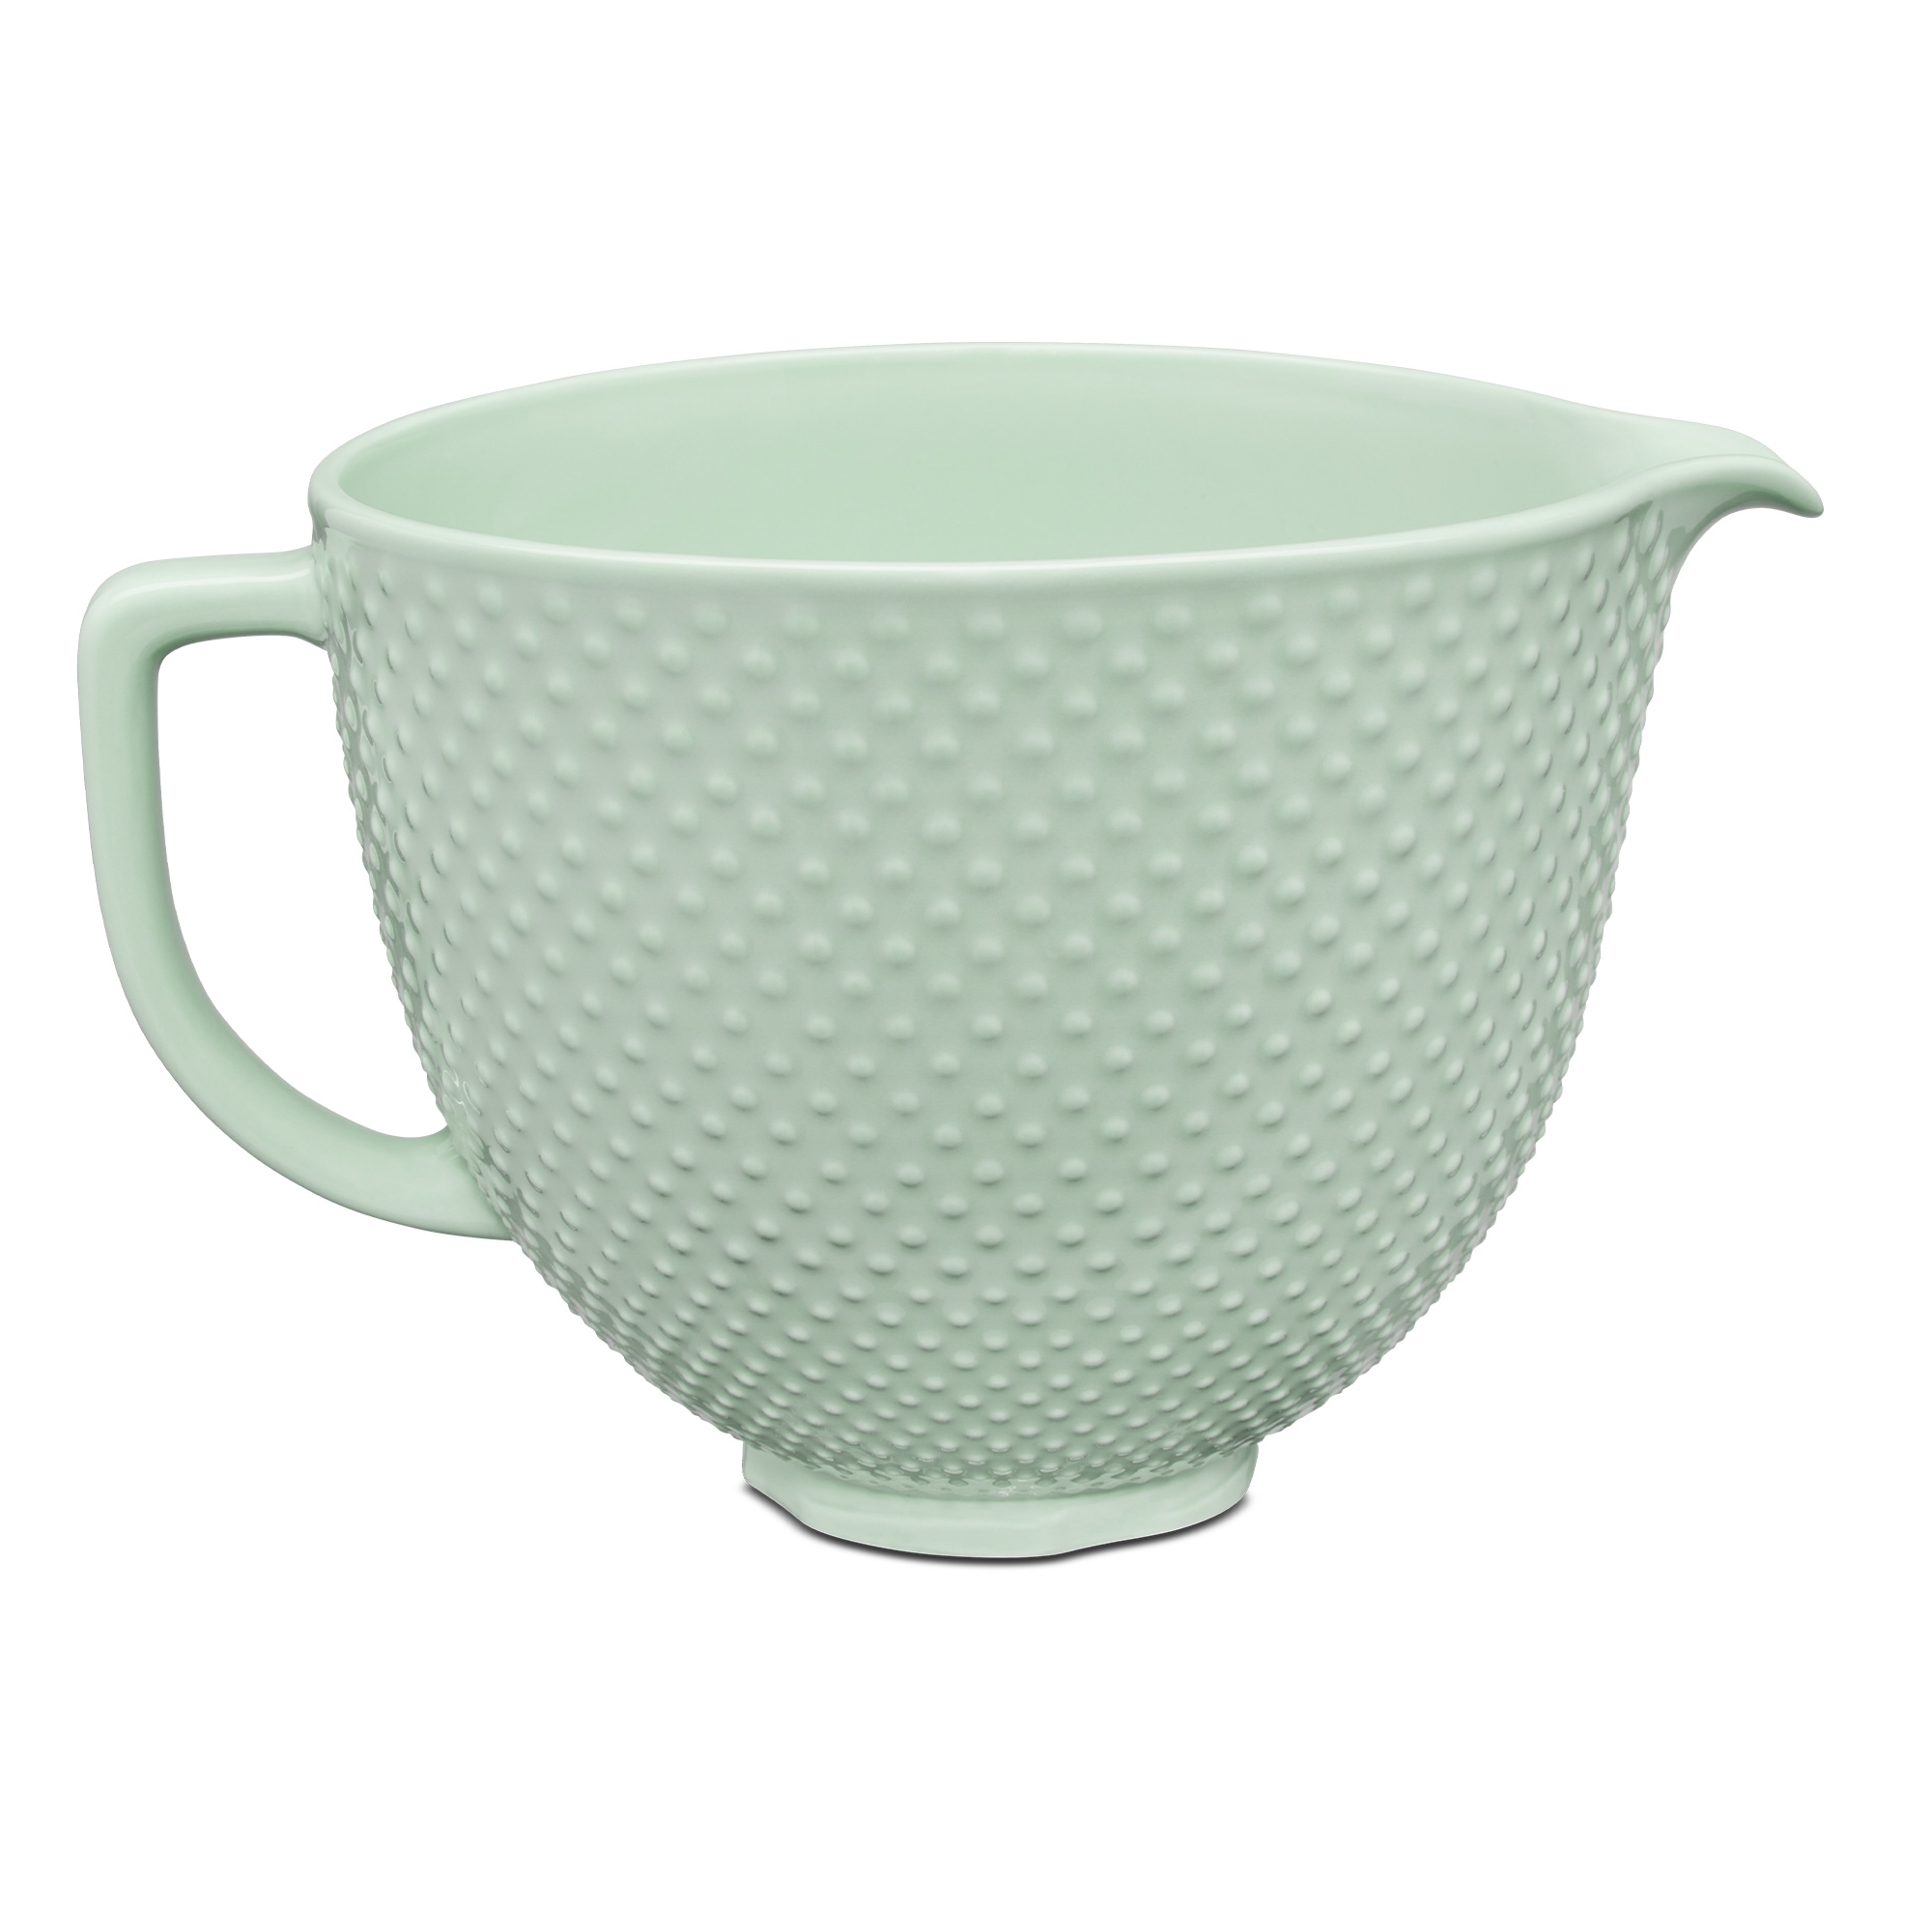 KitchenAid - 4.7 L Ceramic Bowl - dew drop